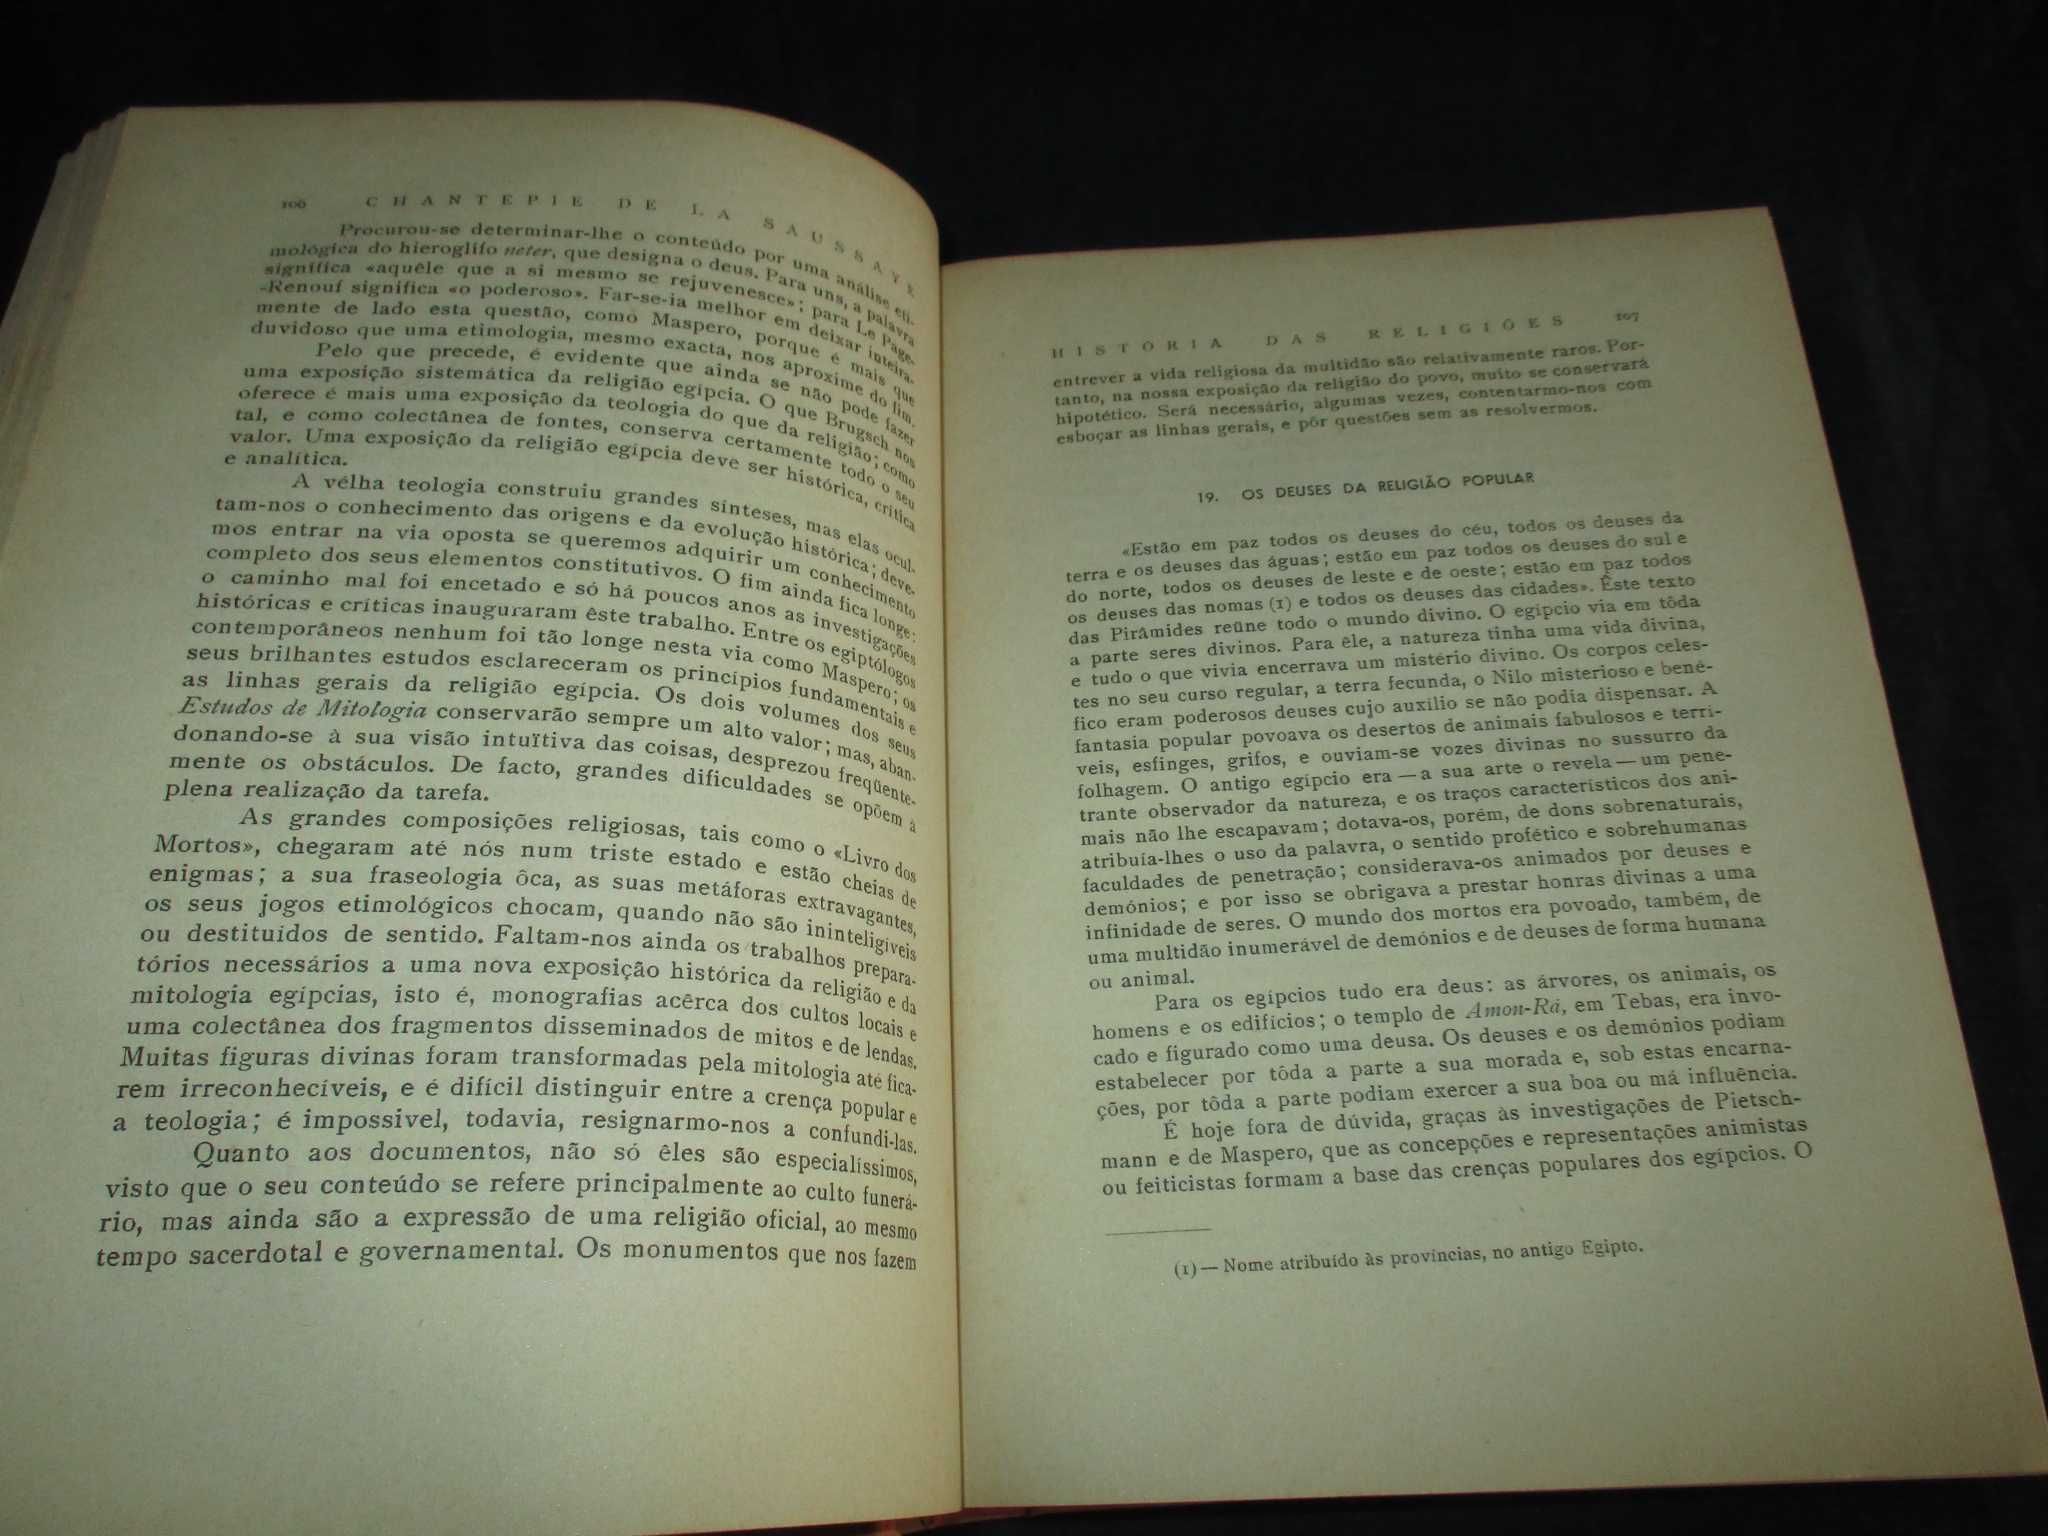 Livro História das Religiões Chantepie de La Saussaye 1ª edição 1940